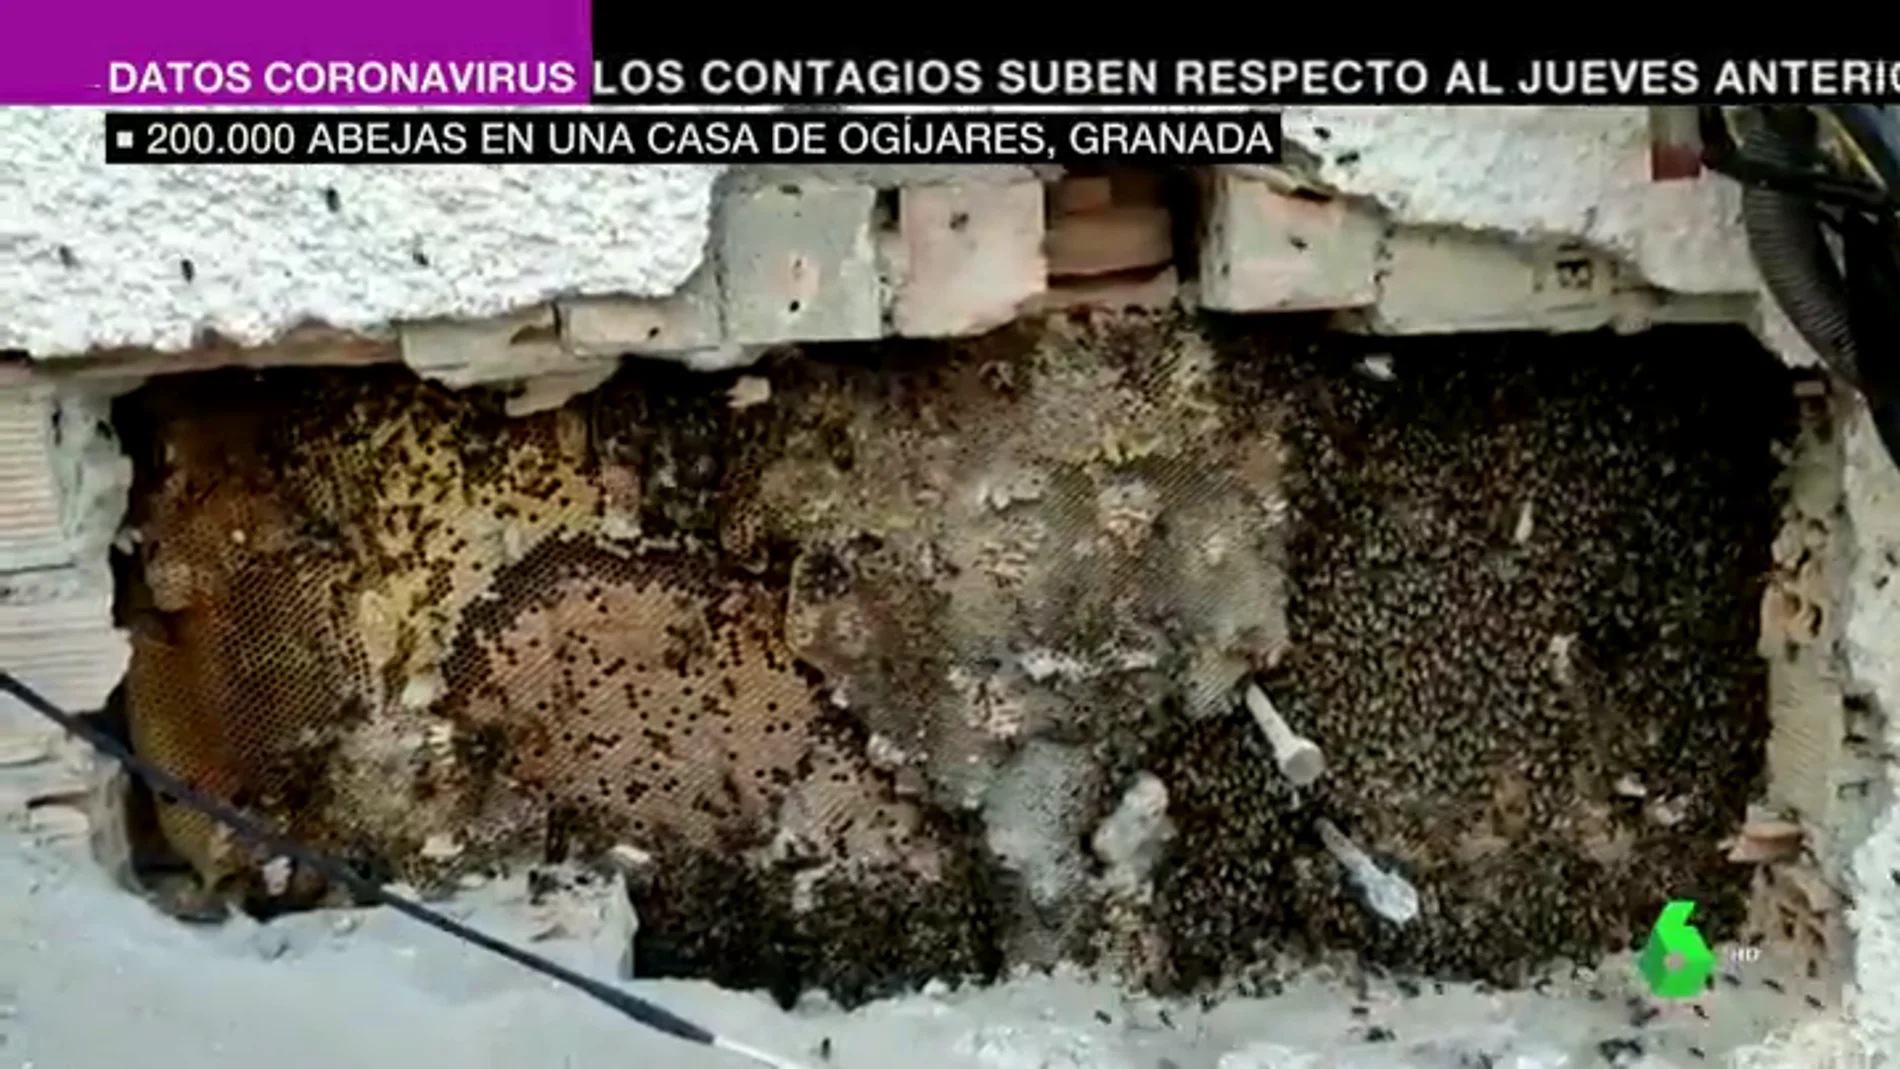 Descubren un enorme panal con 200.000 abejas en la pared de una casa habitada de Ogíjares, Granada